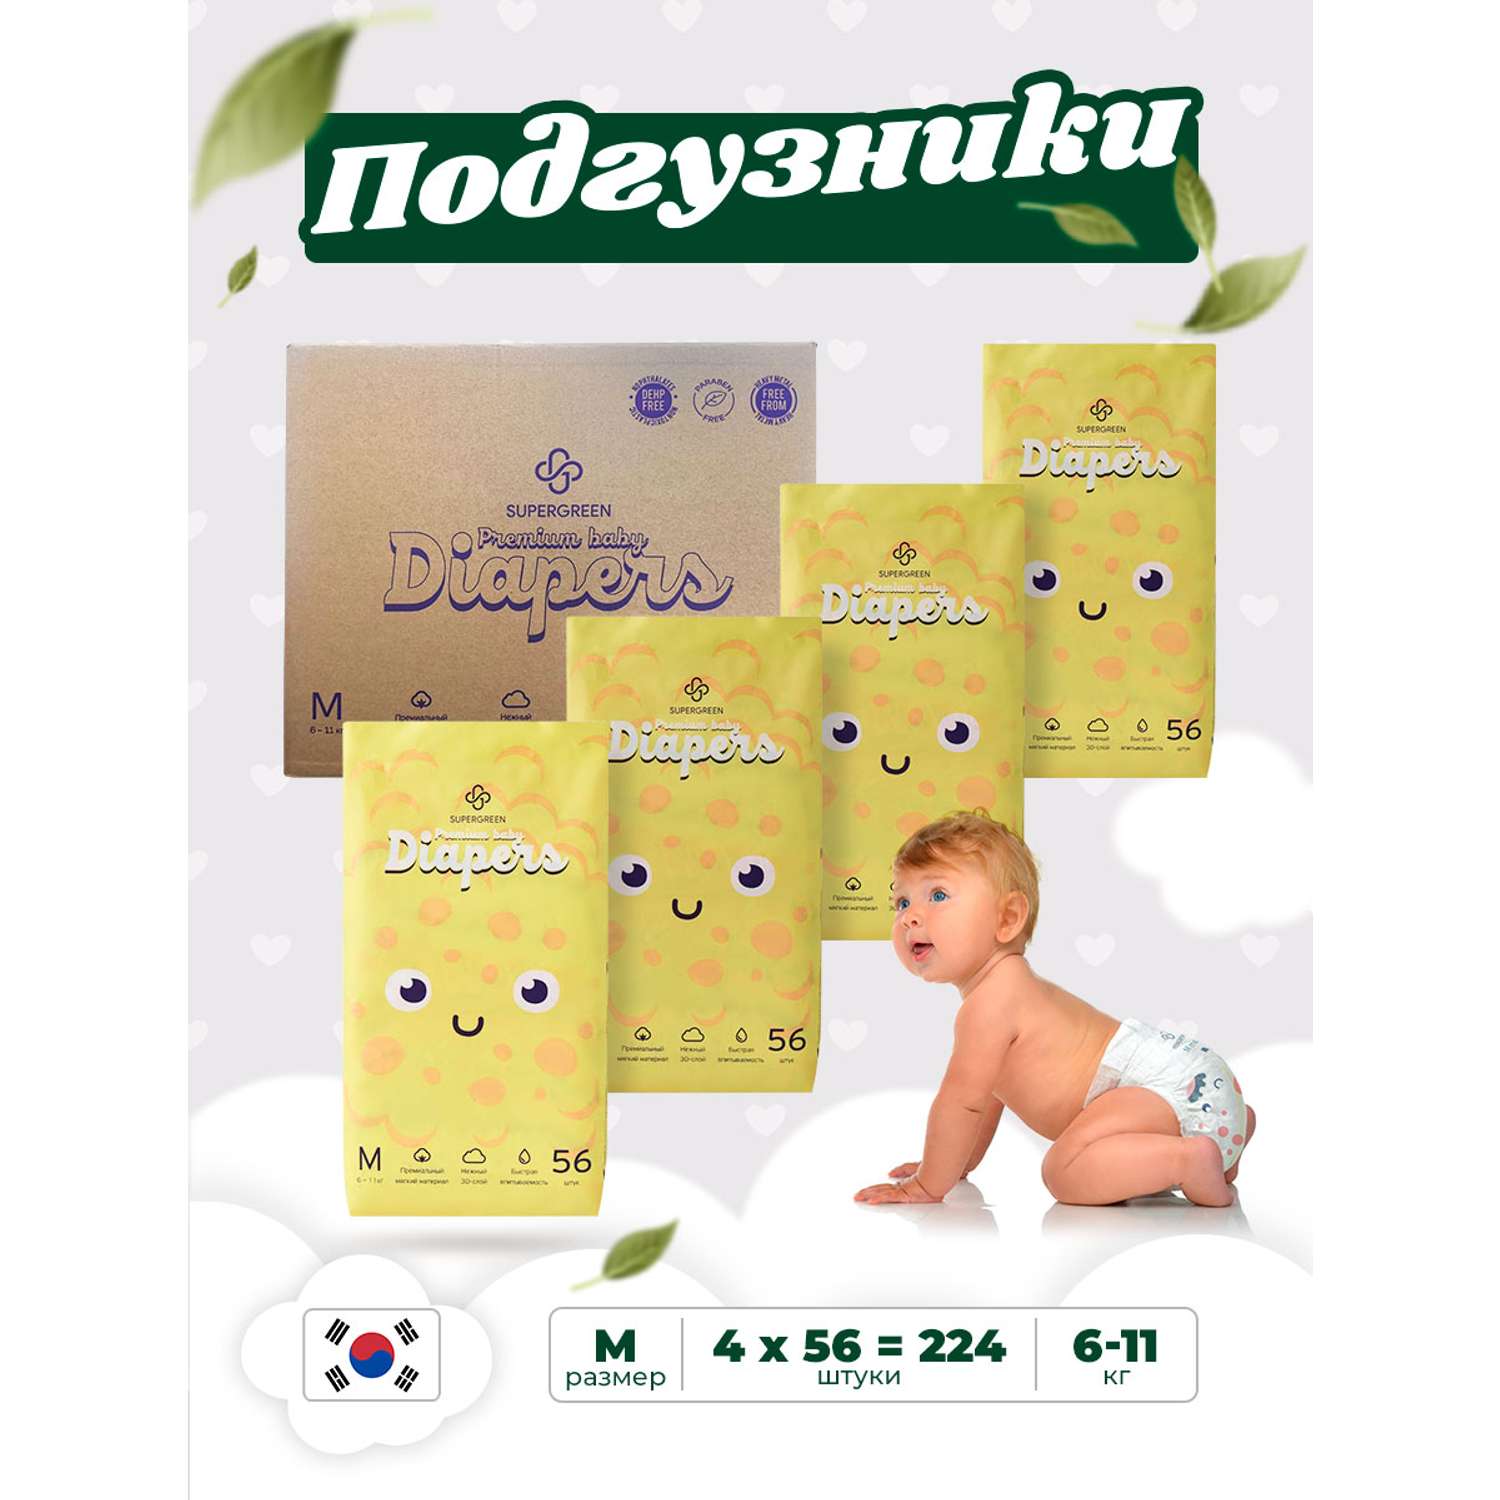 Подгузники SUPERGREEN Premium baby Diapers M размер 4 упаковки по 56 шт 6-11 кг ультрамягкие - фото 1